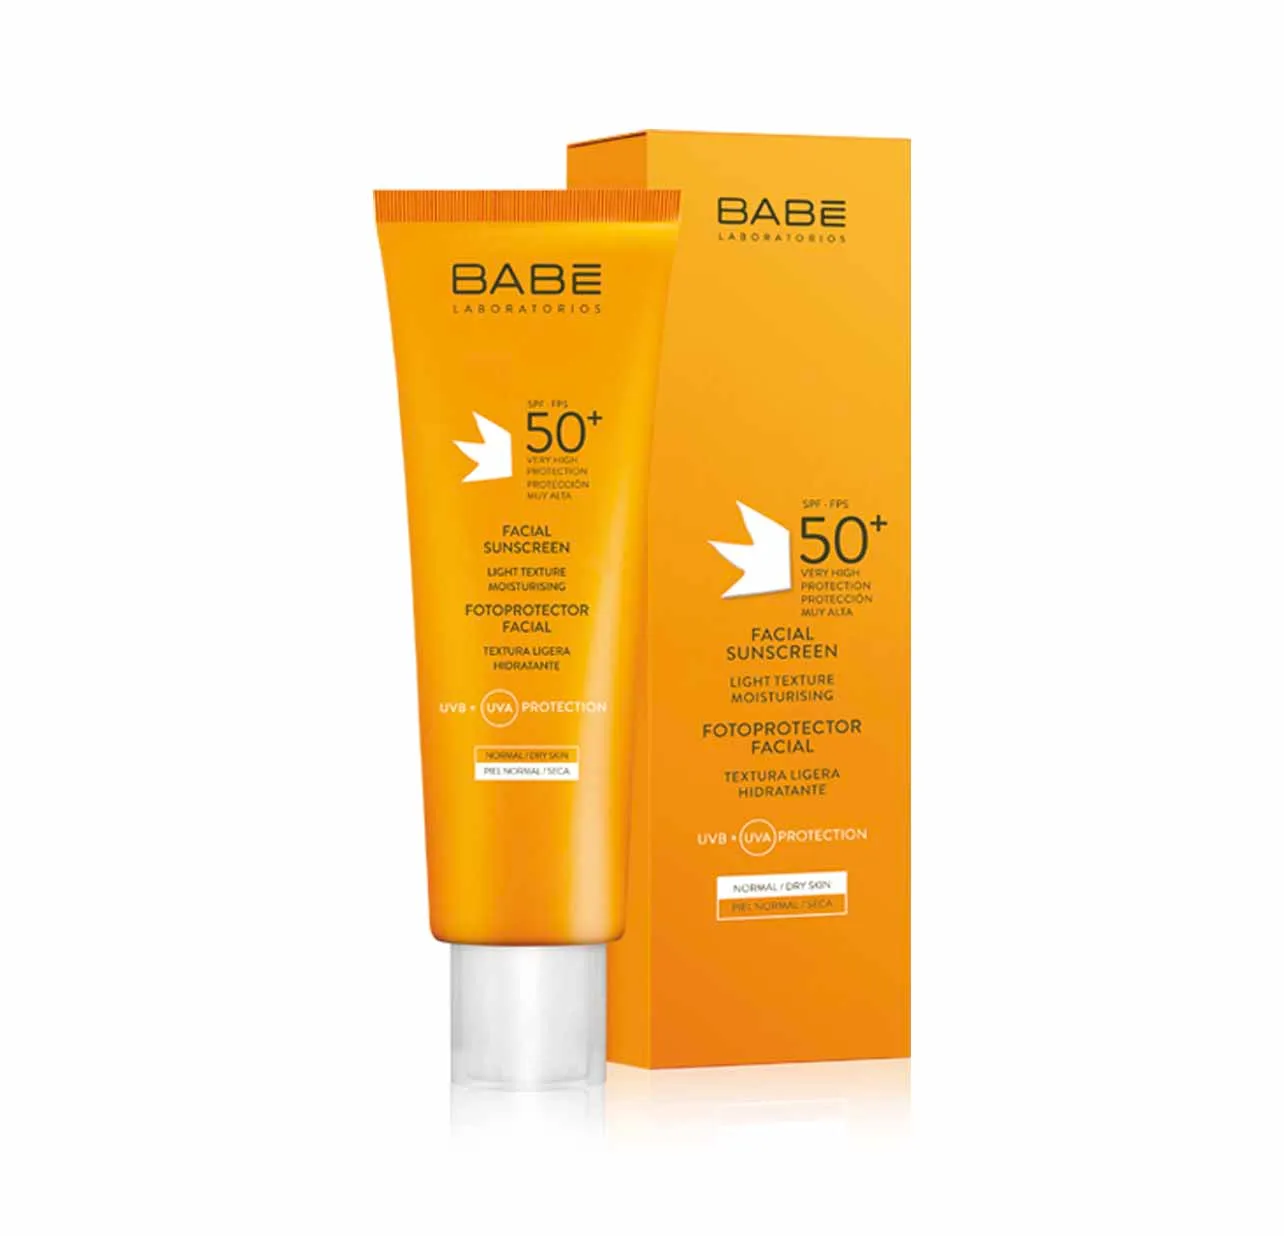 BABE Facial Sunscreen Light Texture SPF 50+ 50ml